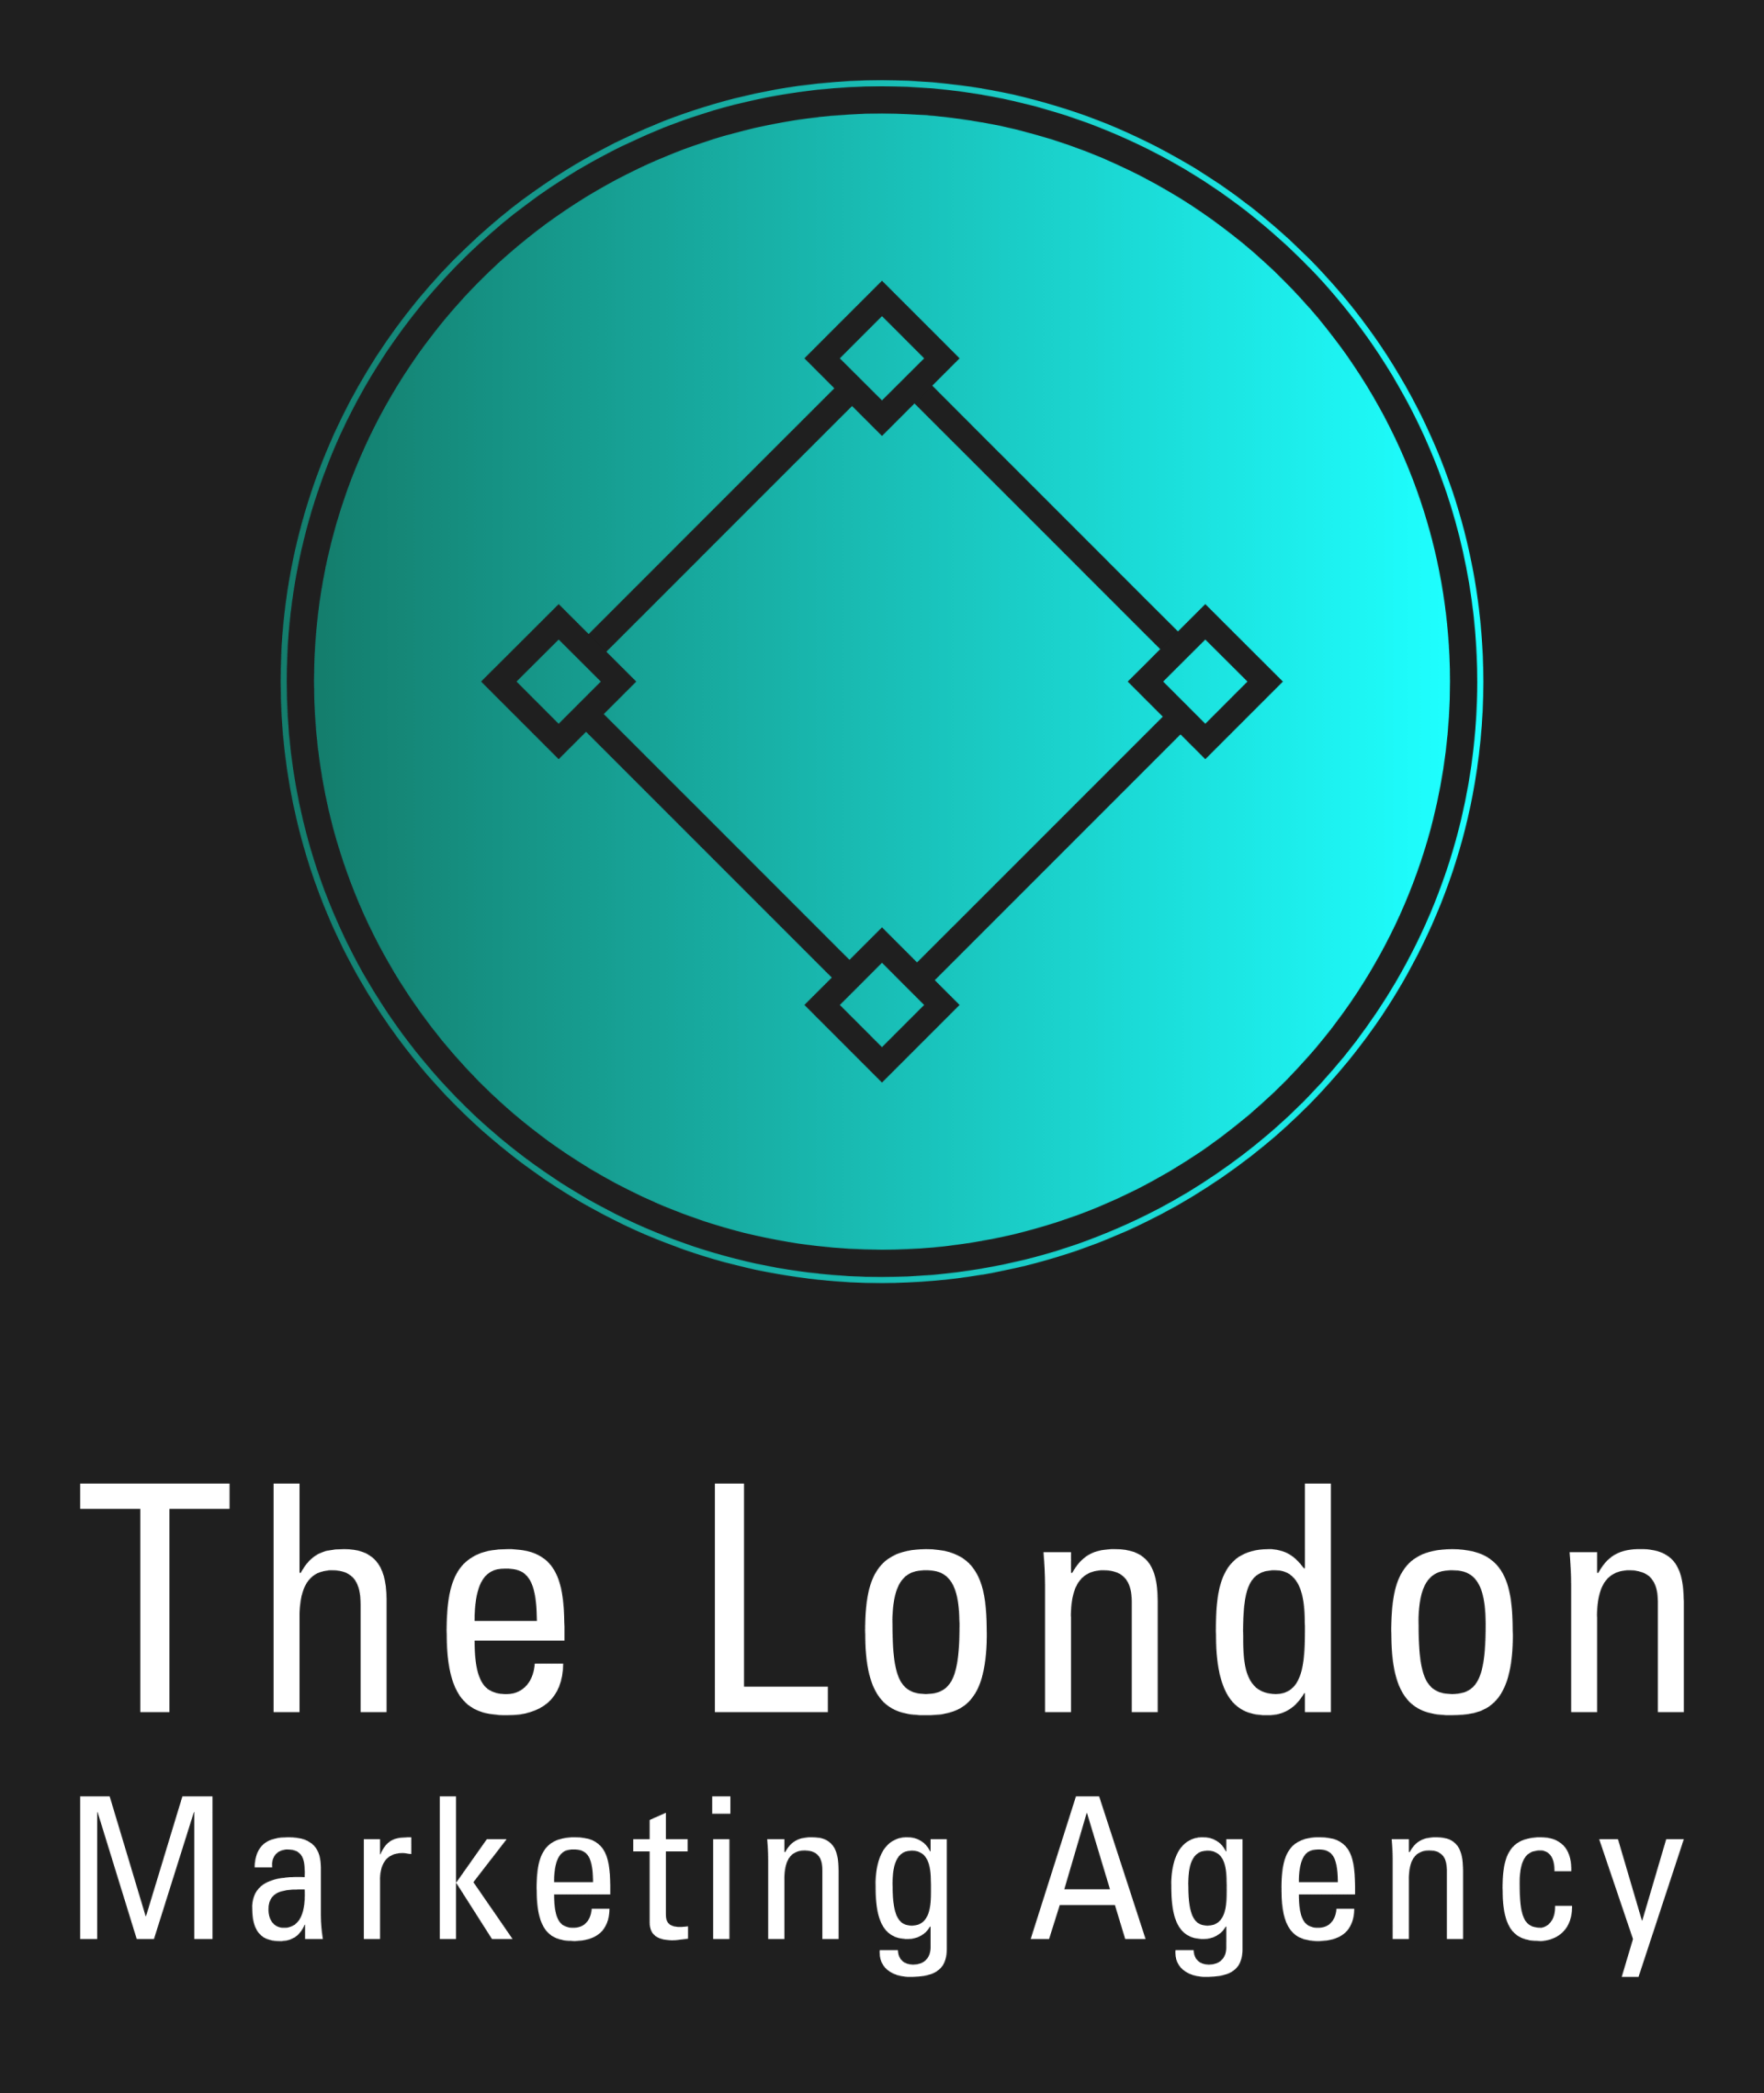 The London Marketing Agency logo